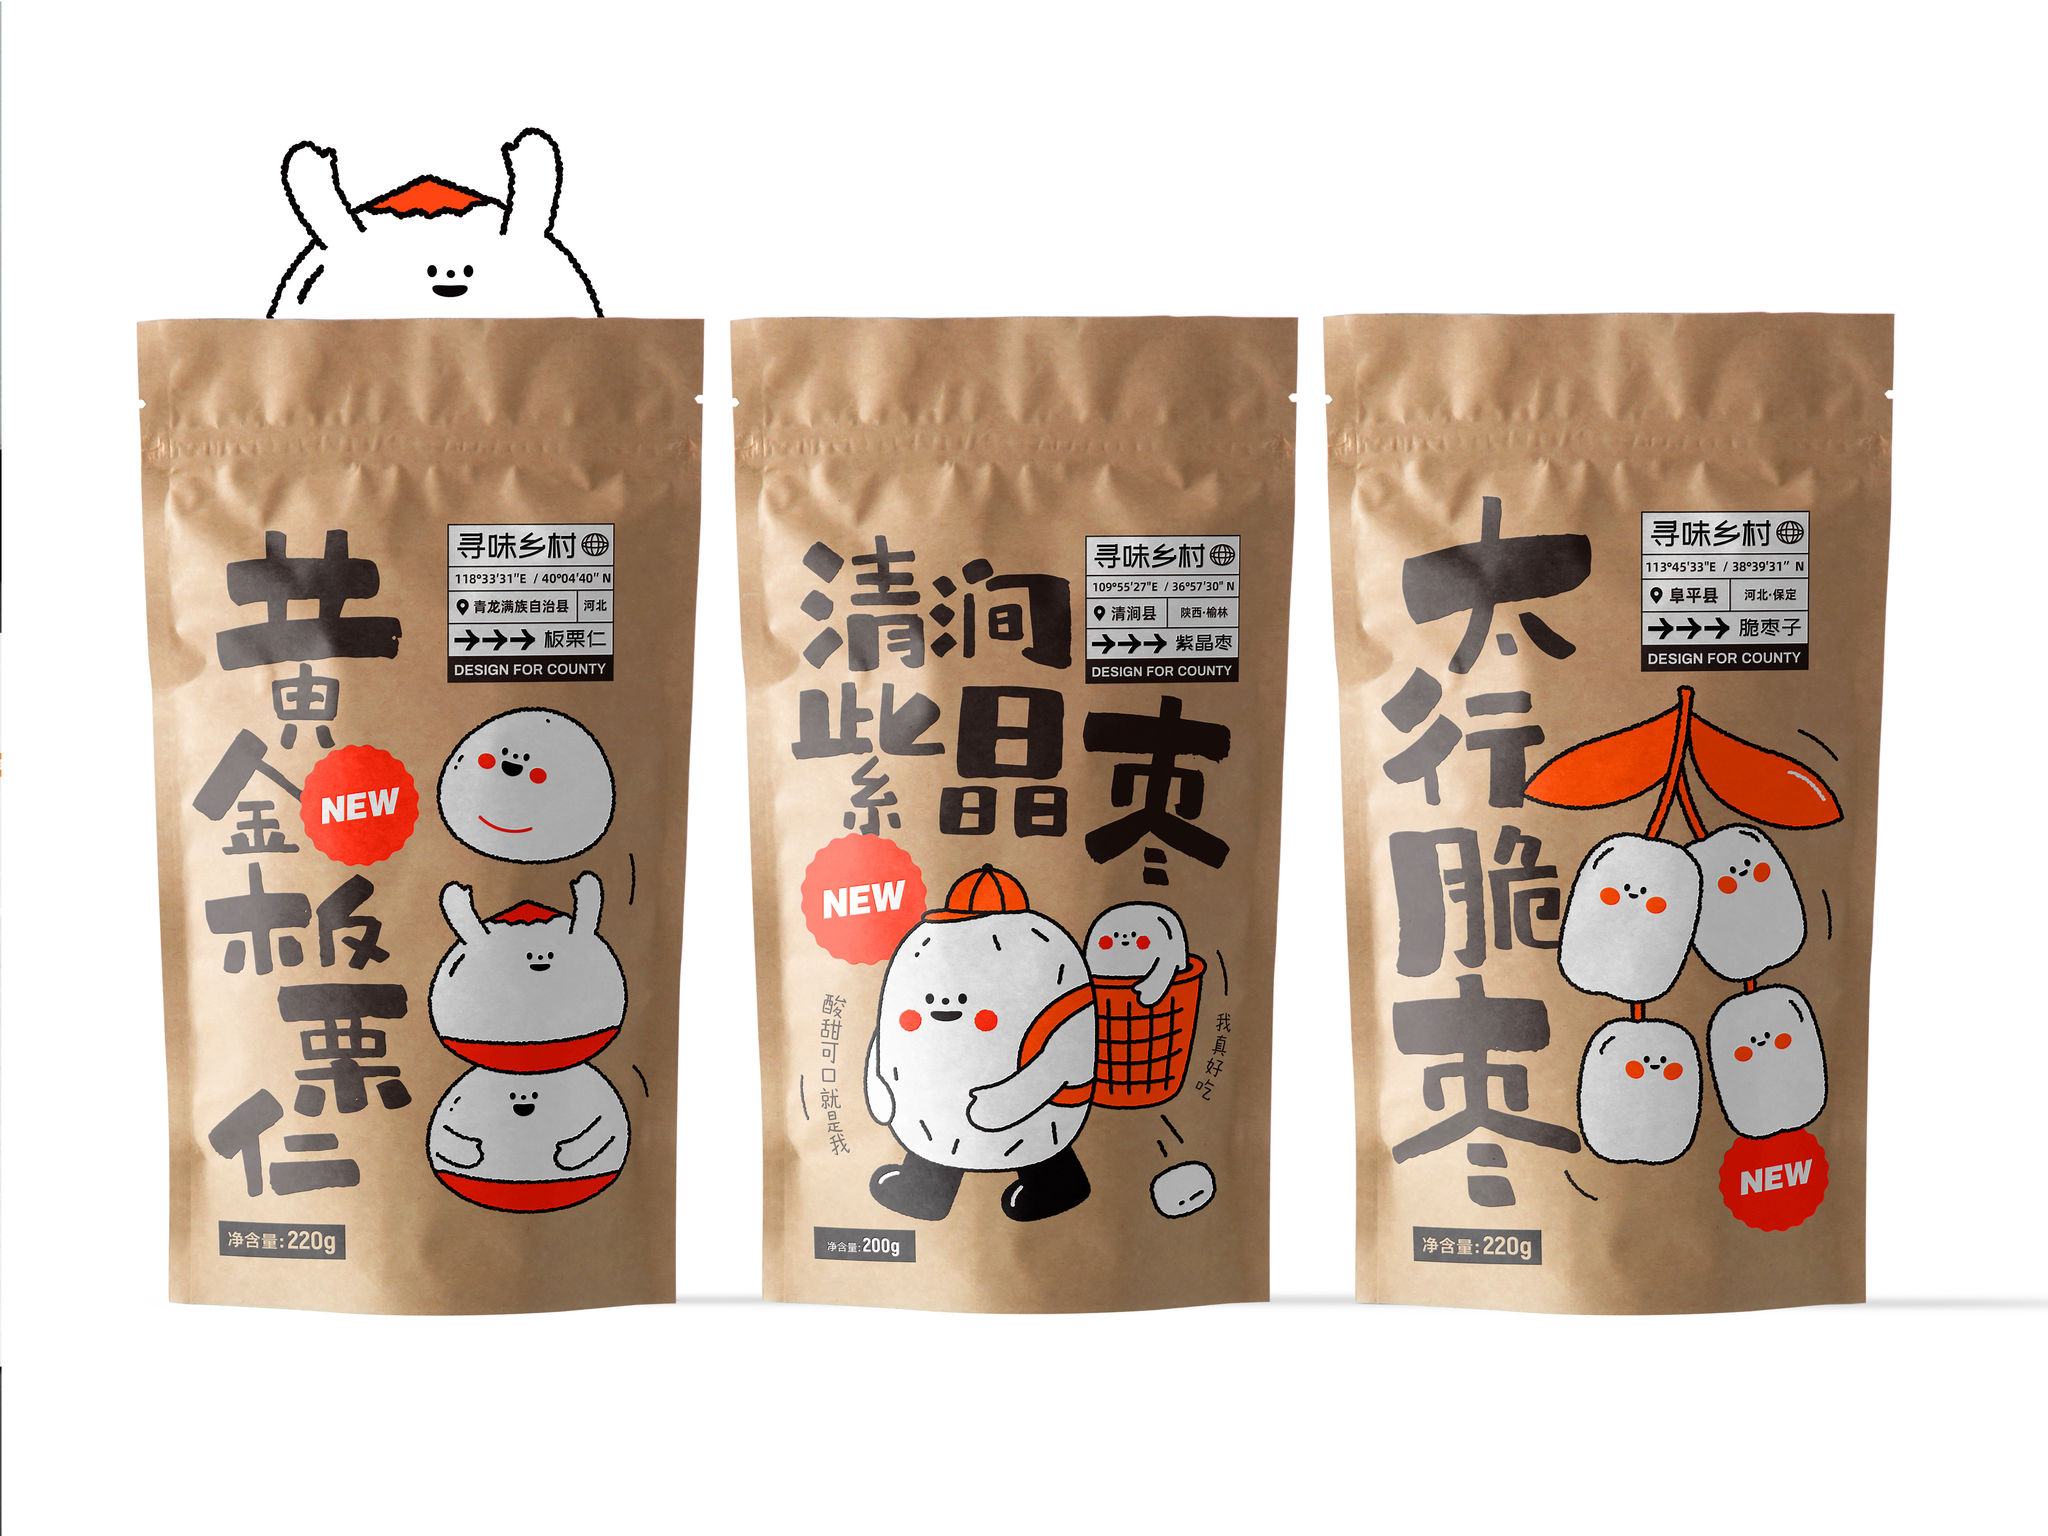 Xunwei County Packaging Series